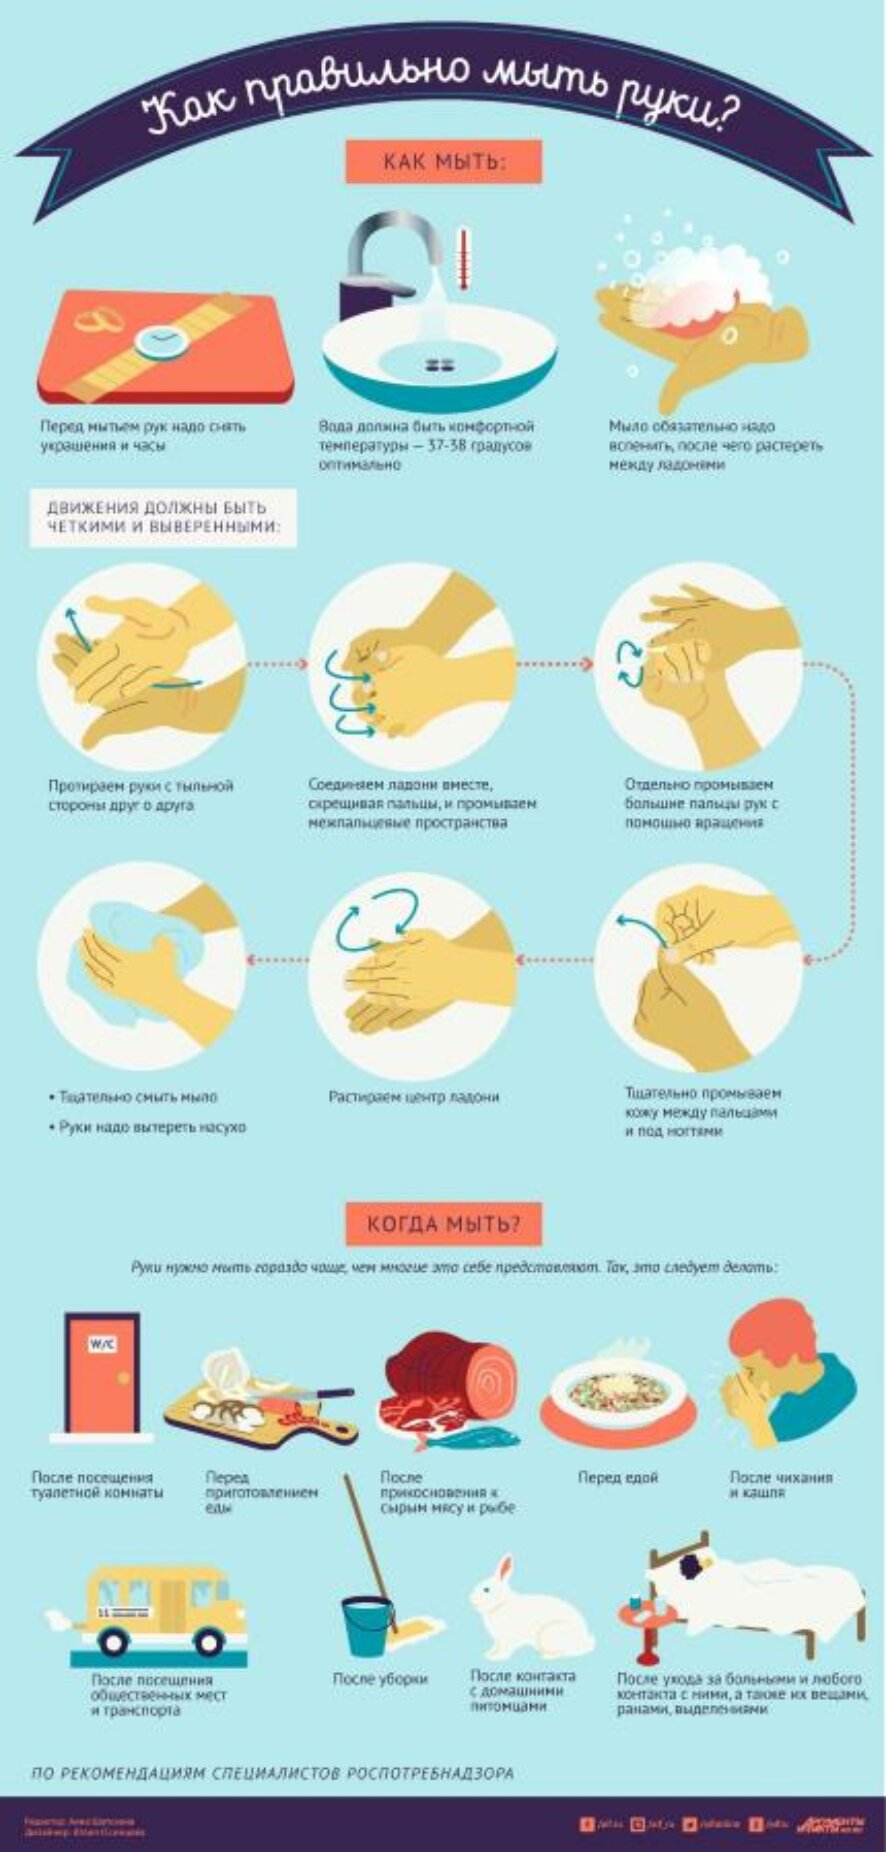 15 октября — Всемирный день чистых рук